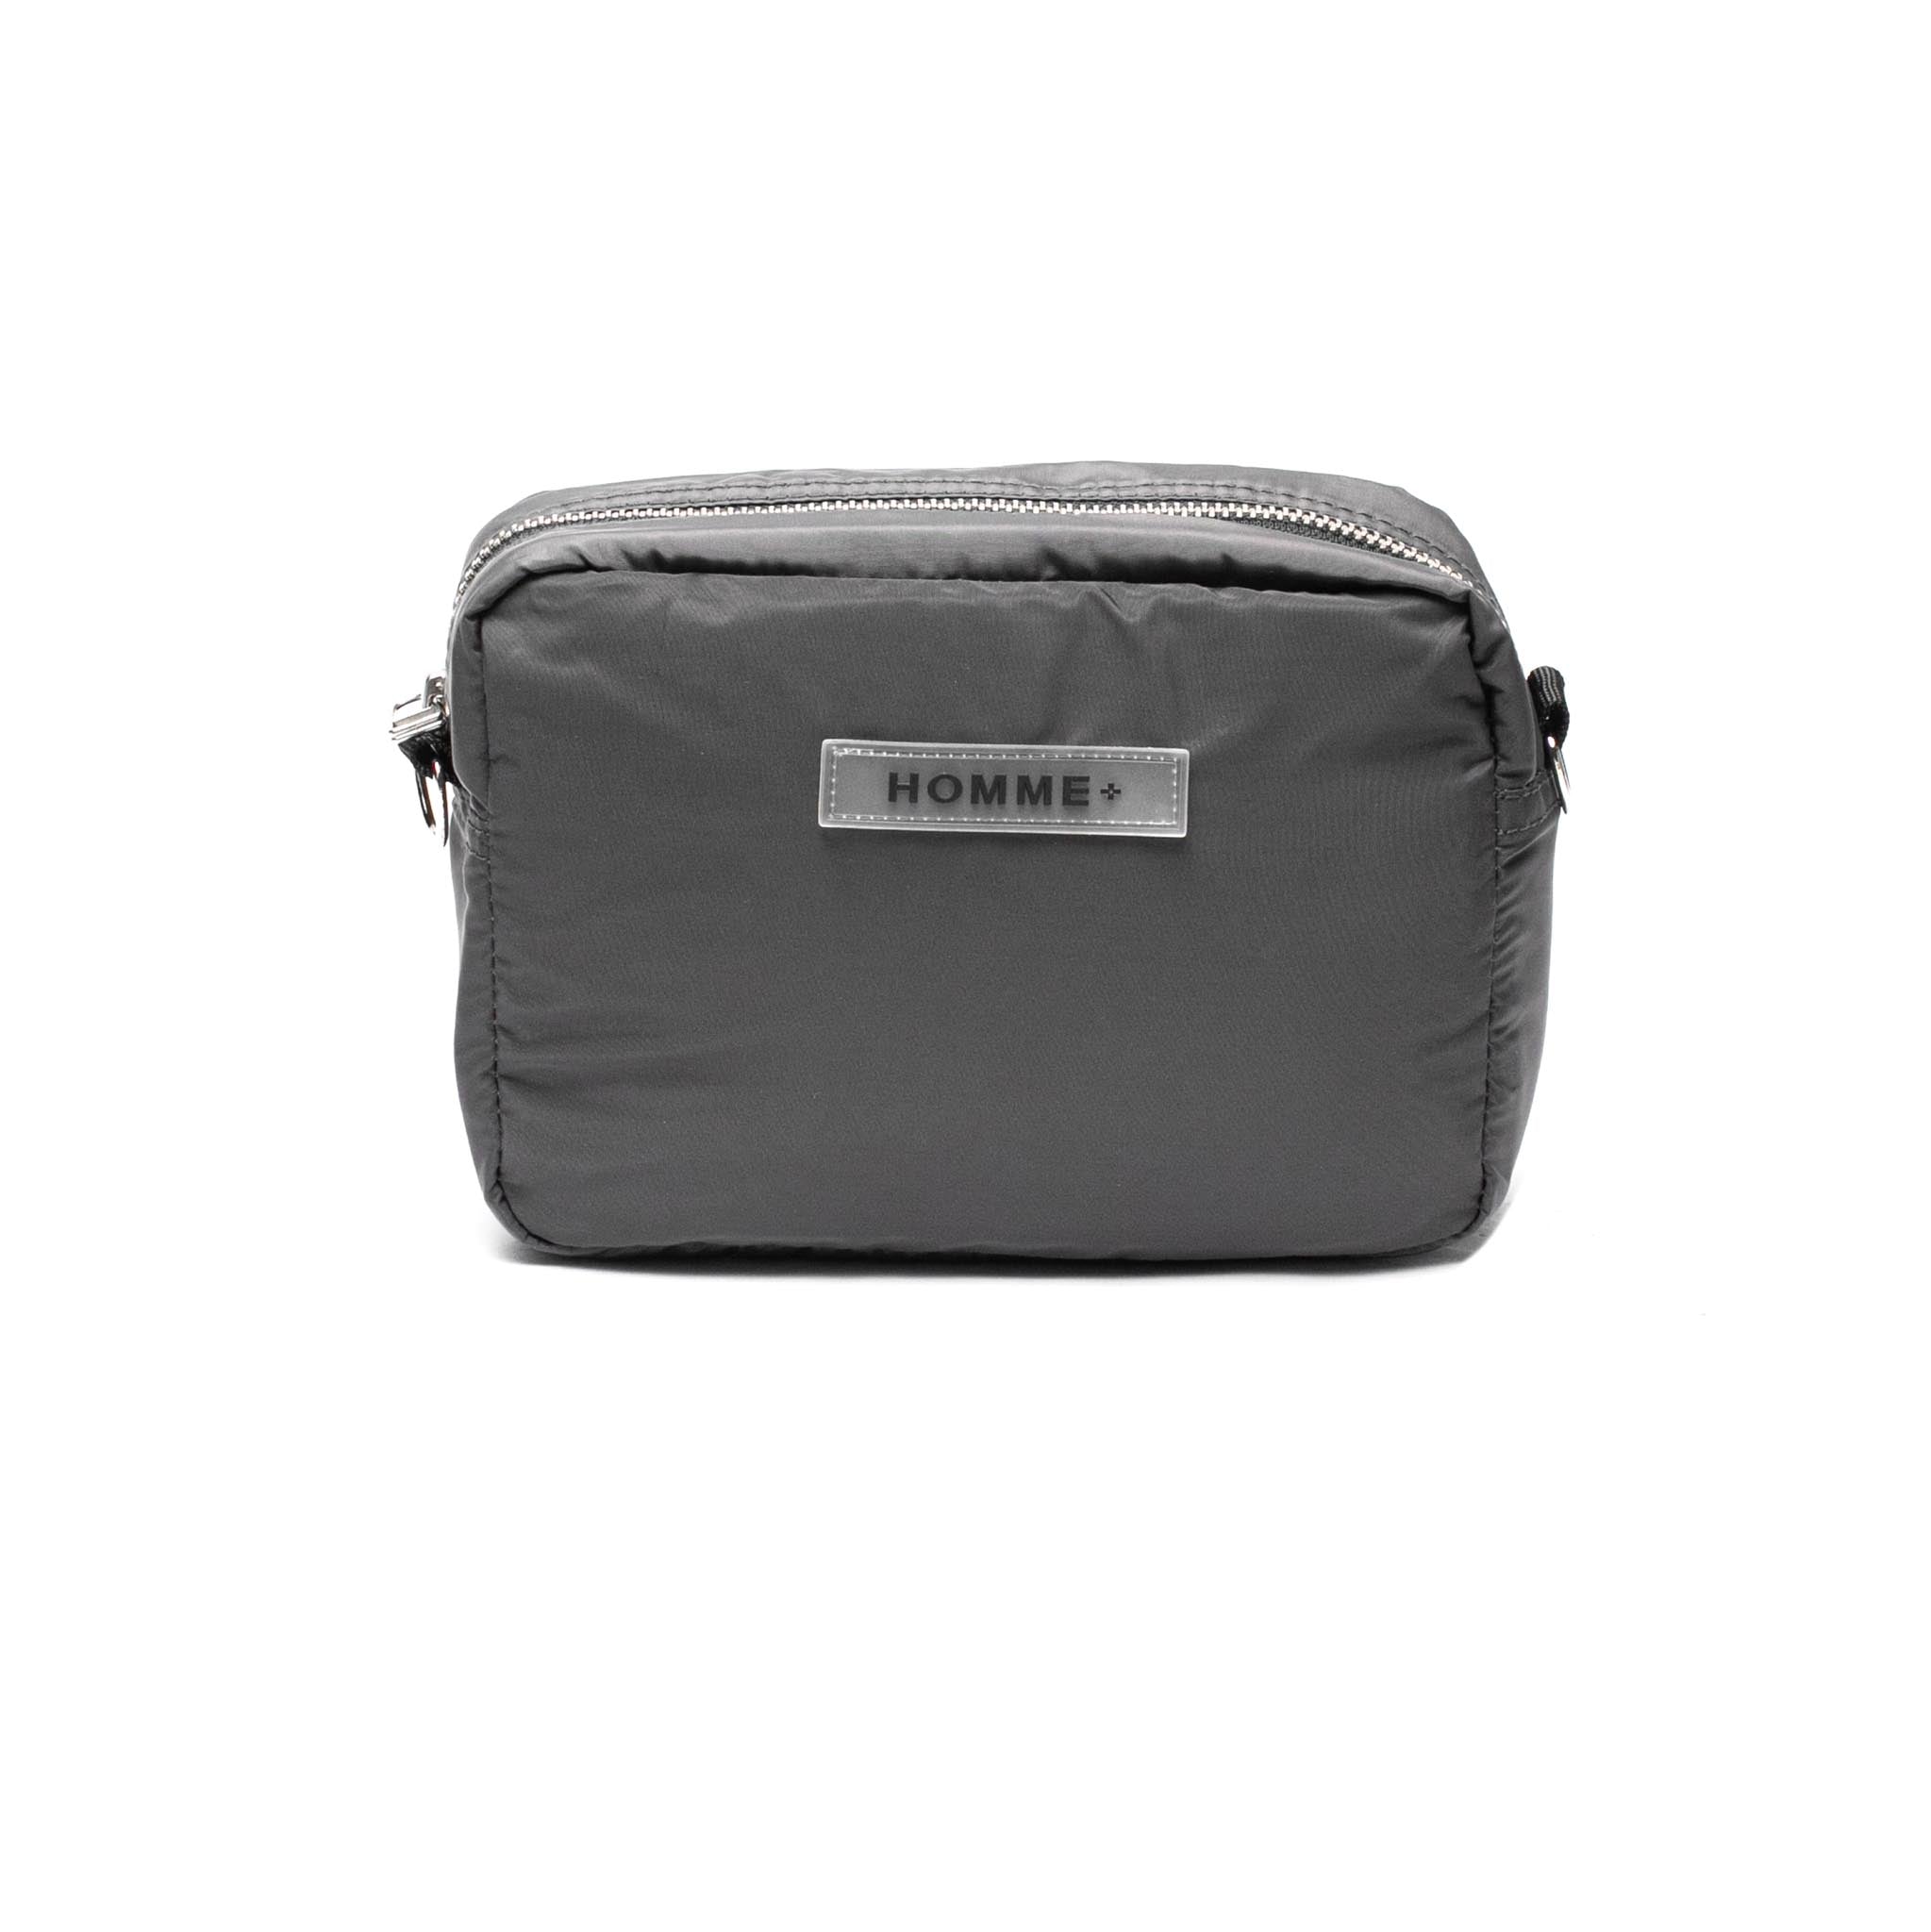 HOMME+ Rubber Logo Side Bag Charcoal